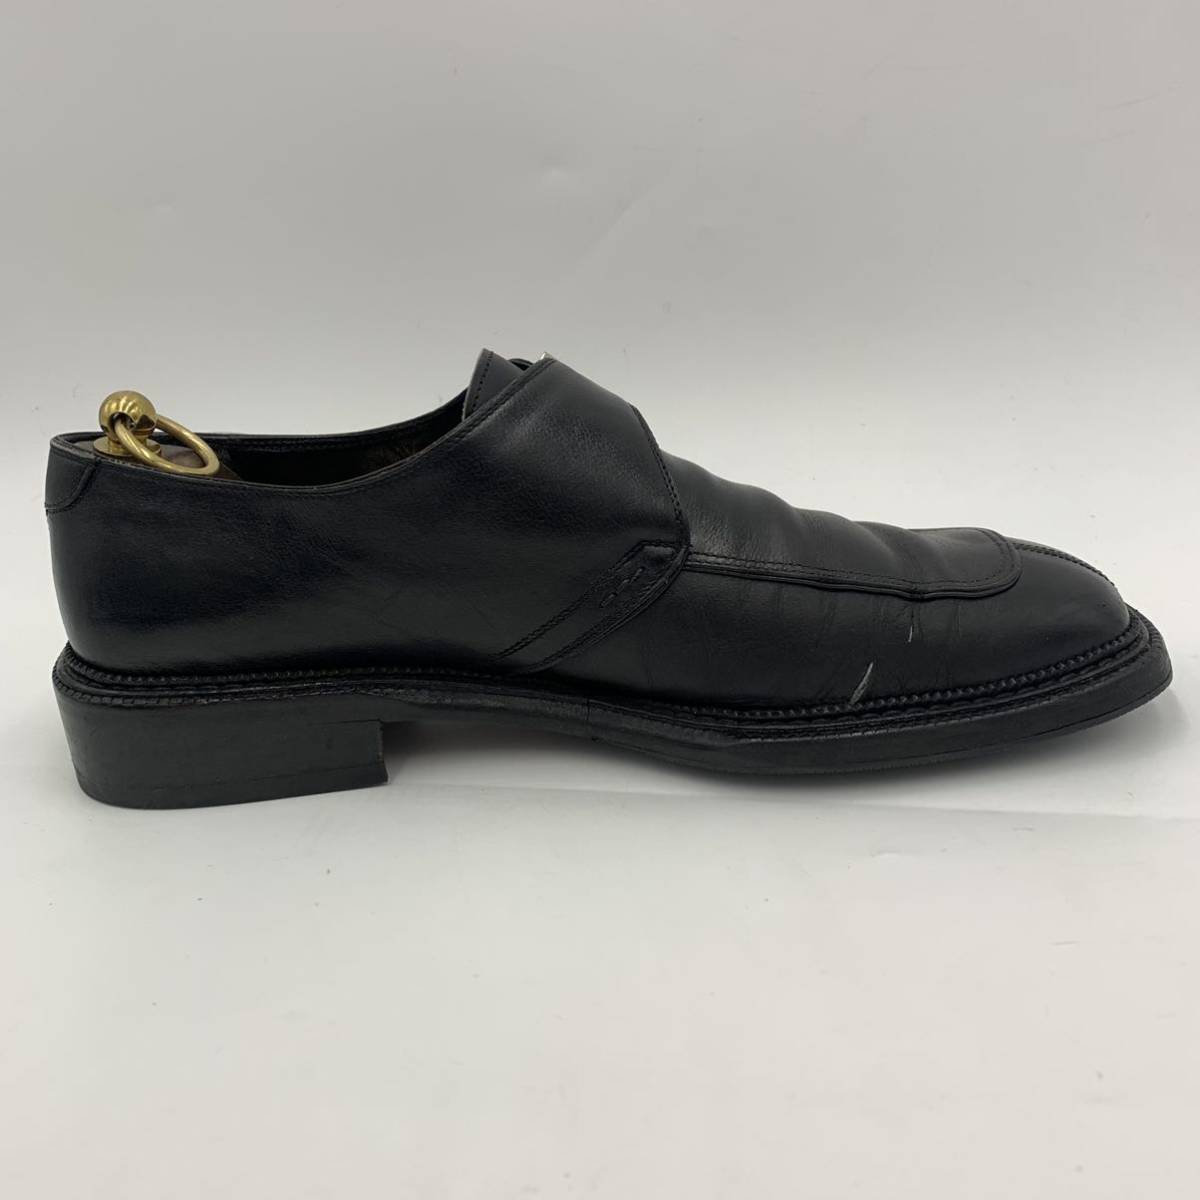 A ☆ 高級紳士靴 'イタリア製' Salvatore Ferragamo フェラガモ モンクストラップ レザー ビジネス/ドレスシューズ 革靴 size:10D 28.5cm_画像6